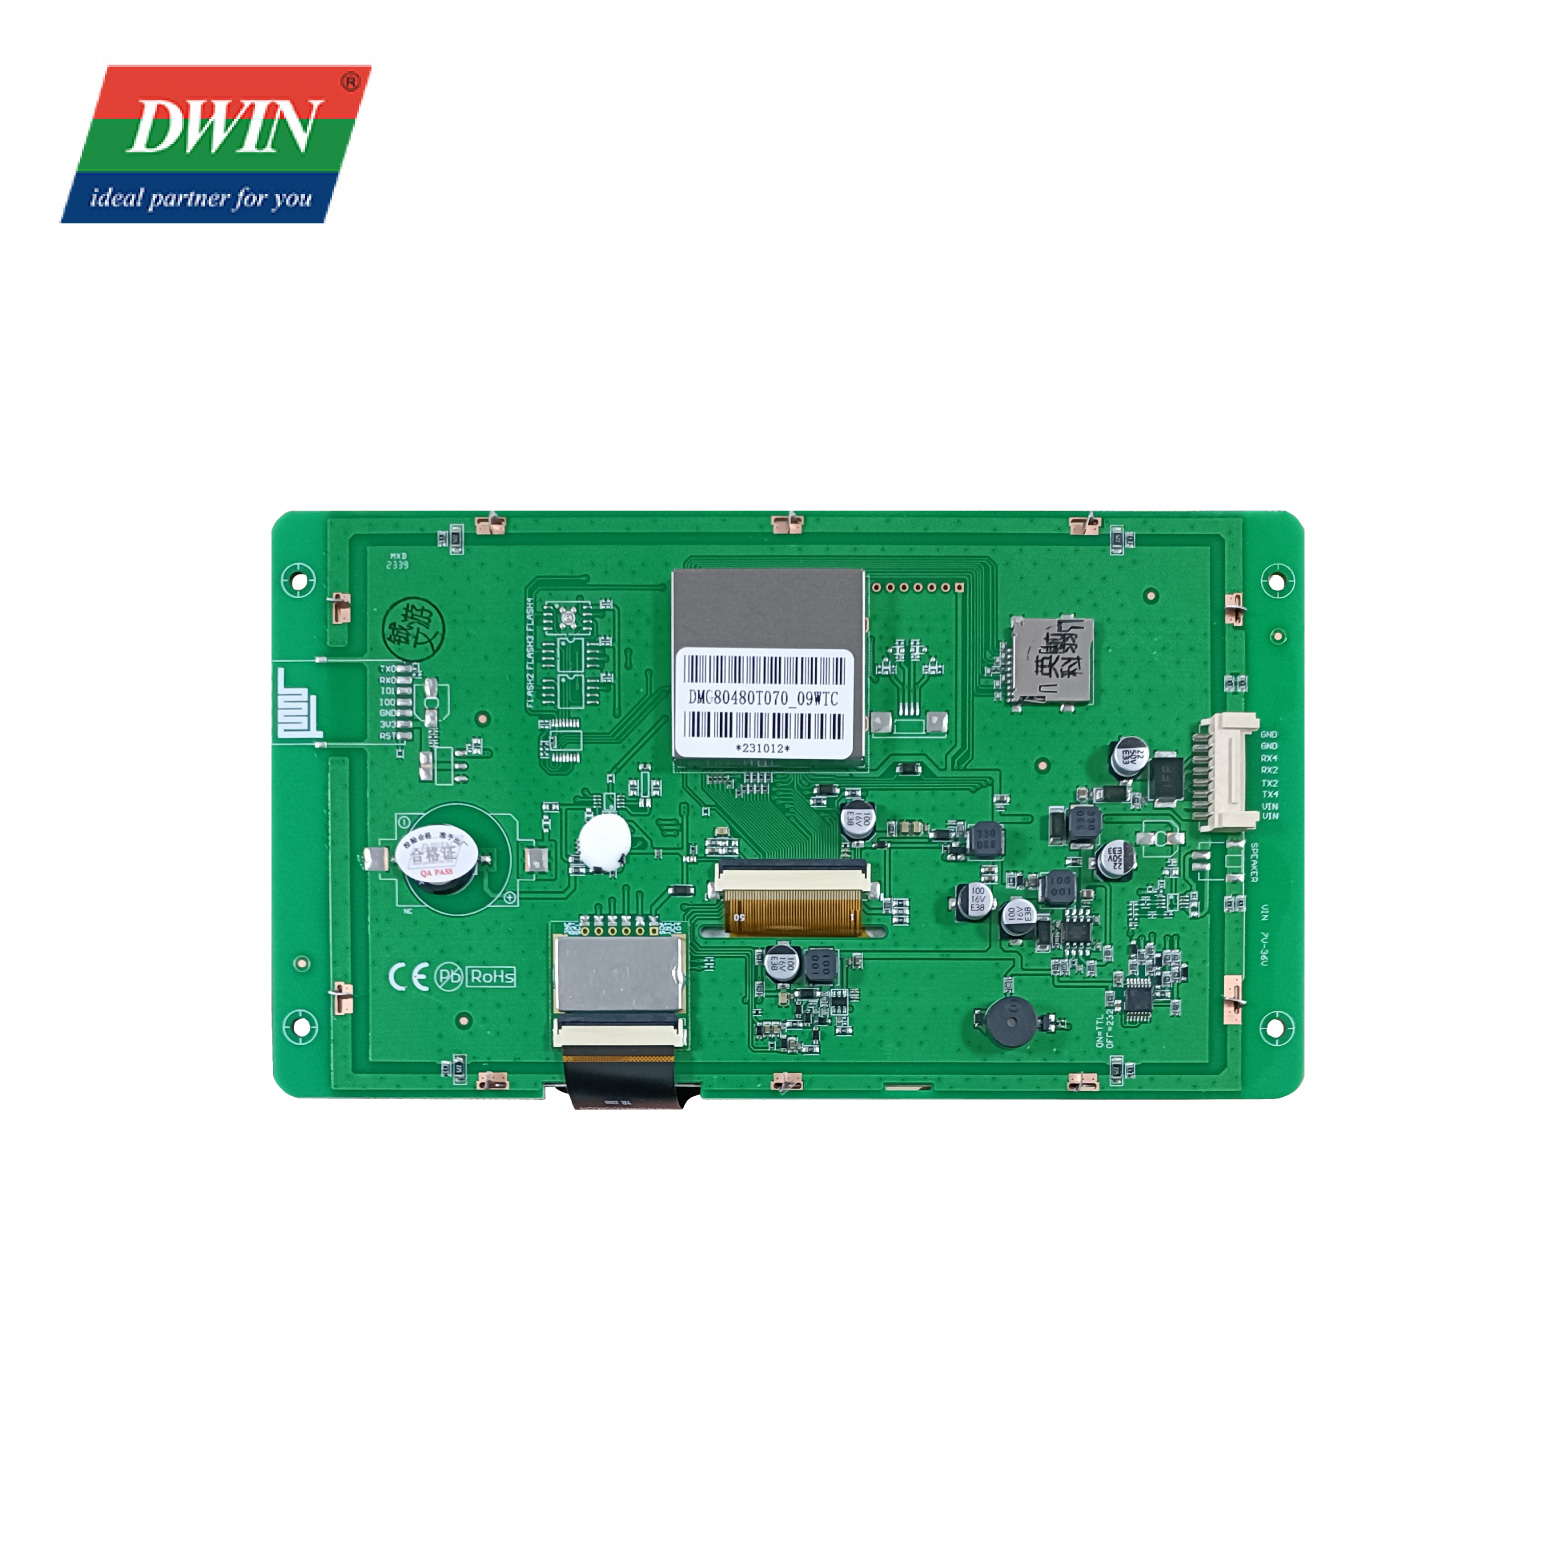 Màn hình LCD TFT nổi bật 7,0 inch DMG80480T070_09W (Cấp công nghiệp)